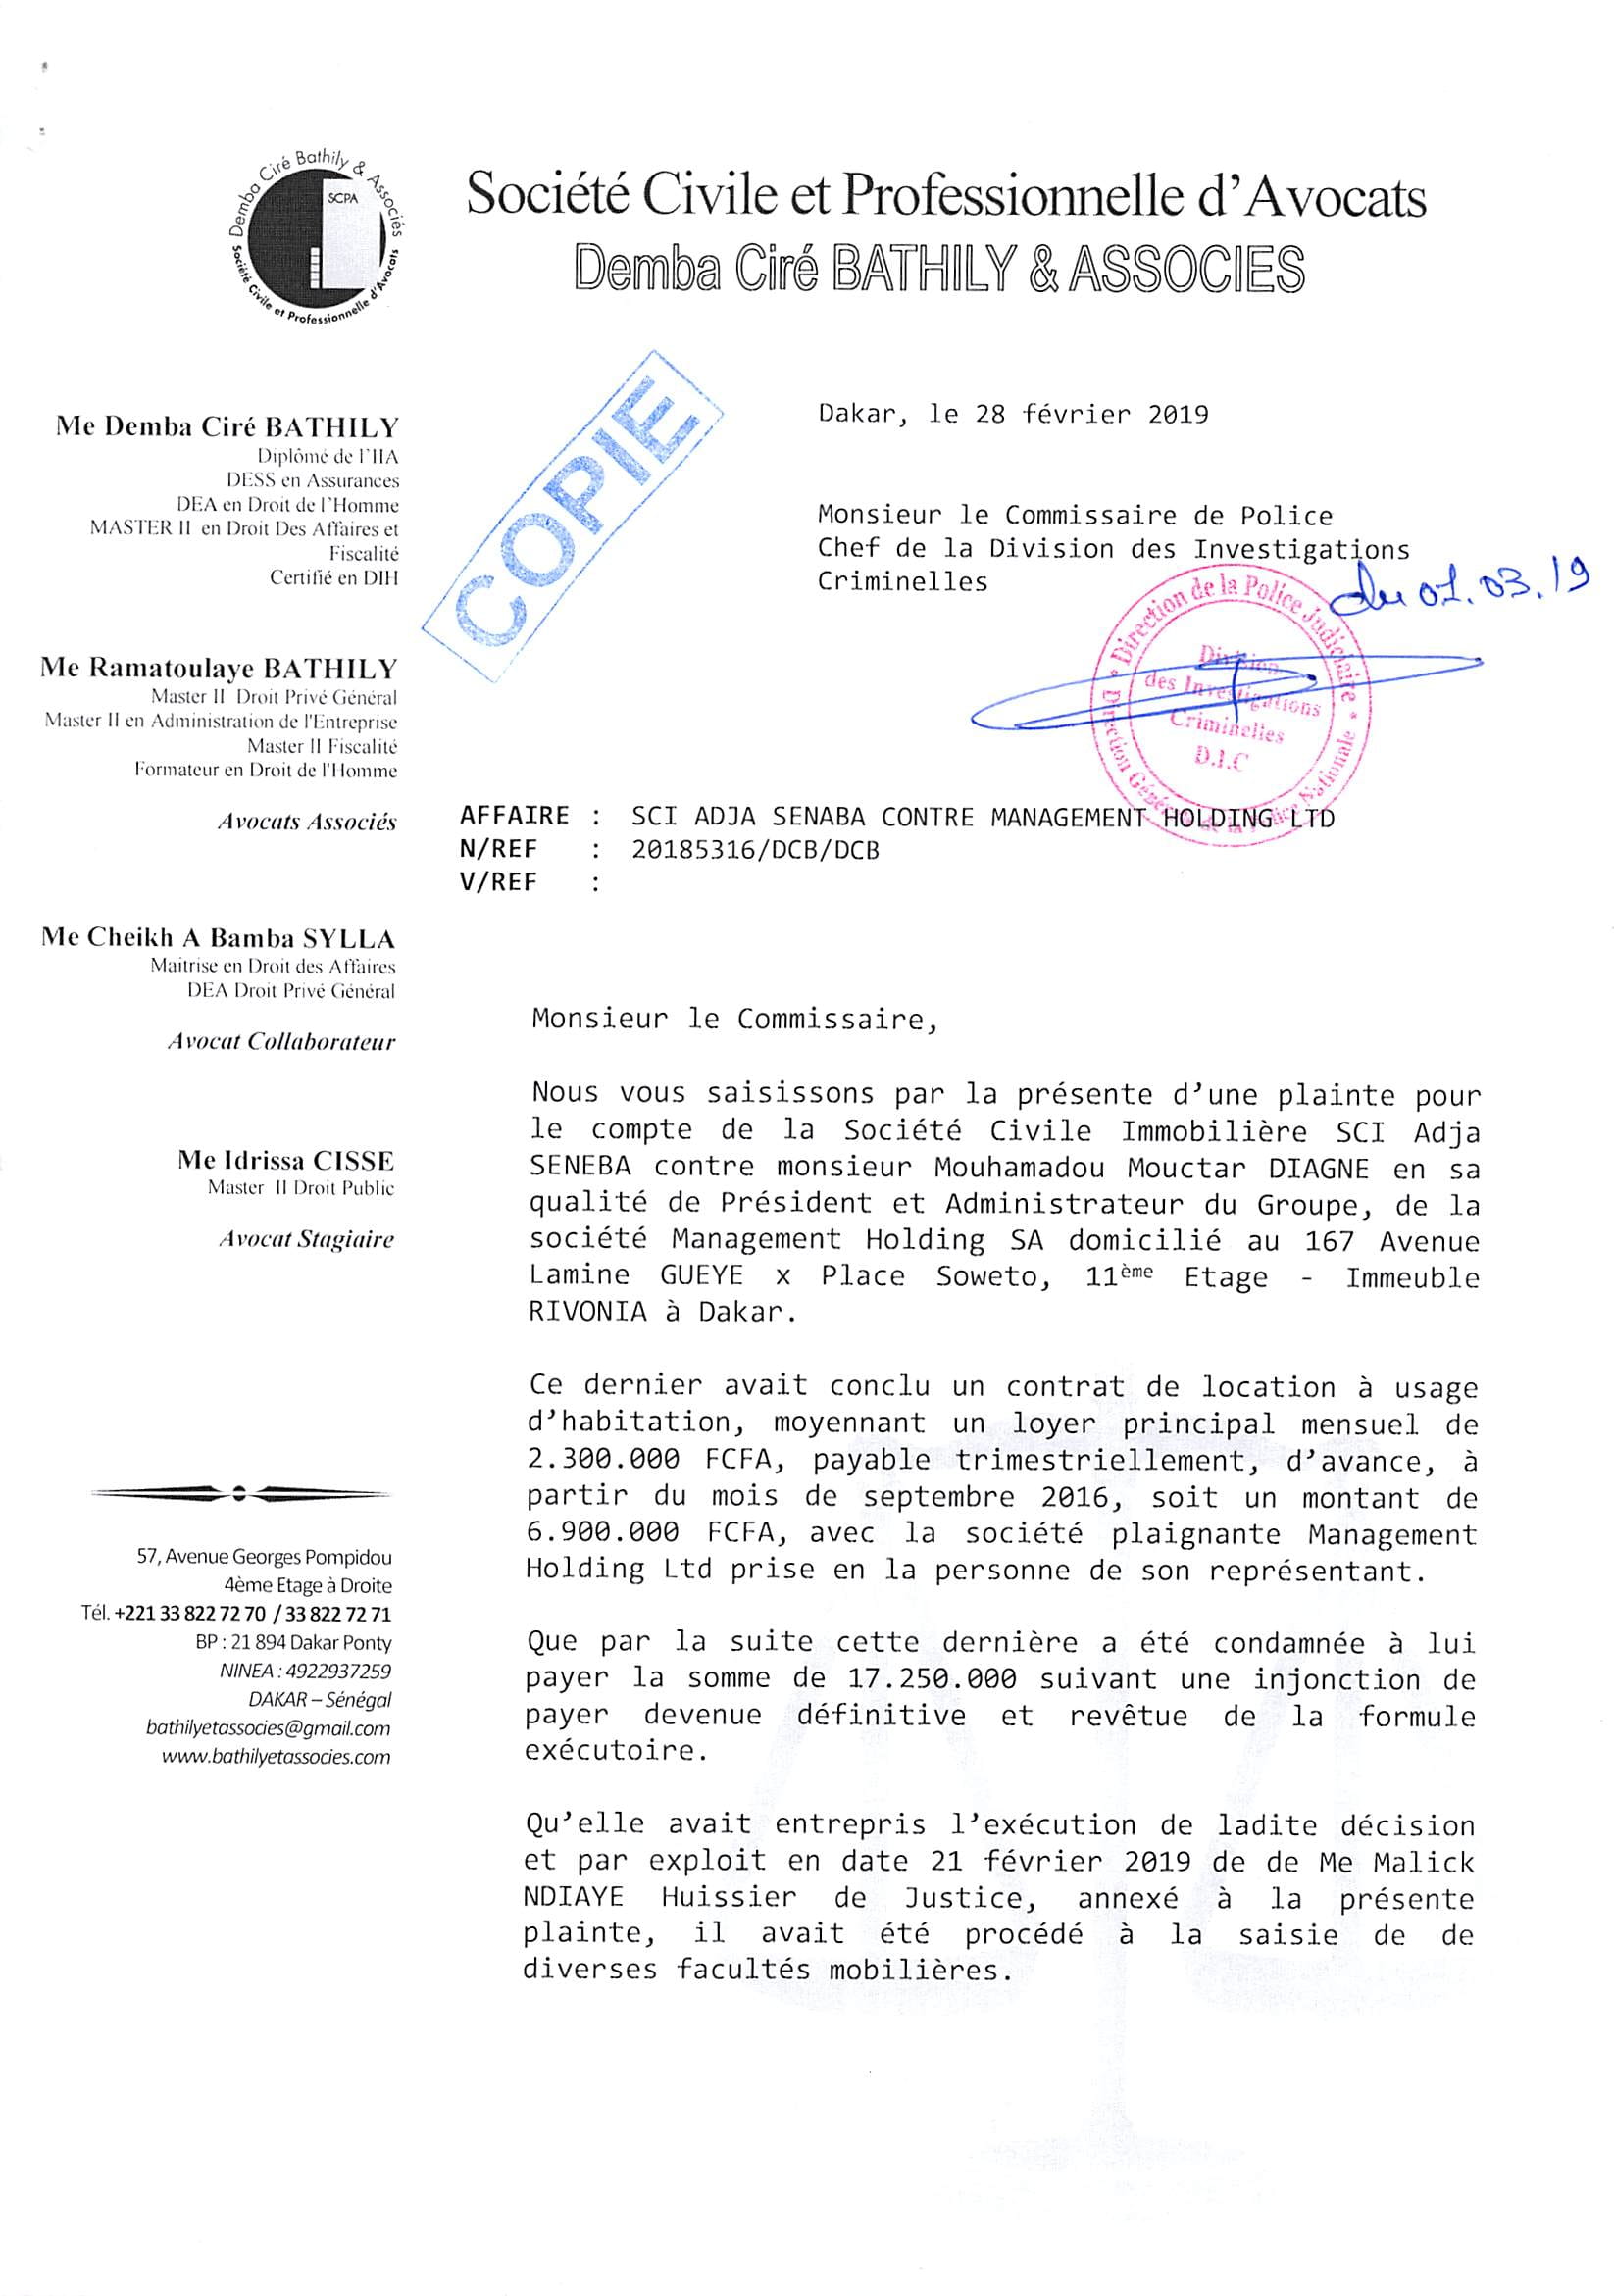 Poursuivi pour 40 millions FCFA : Mouhamadou Mouctar Diagne visé par une nouvelle plainte ( Document )